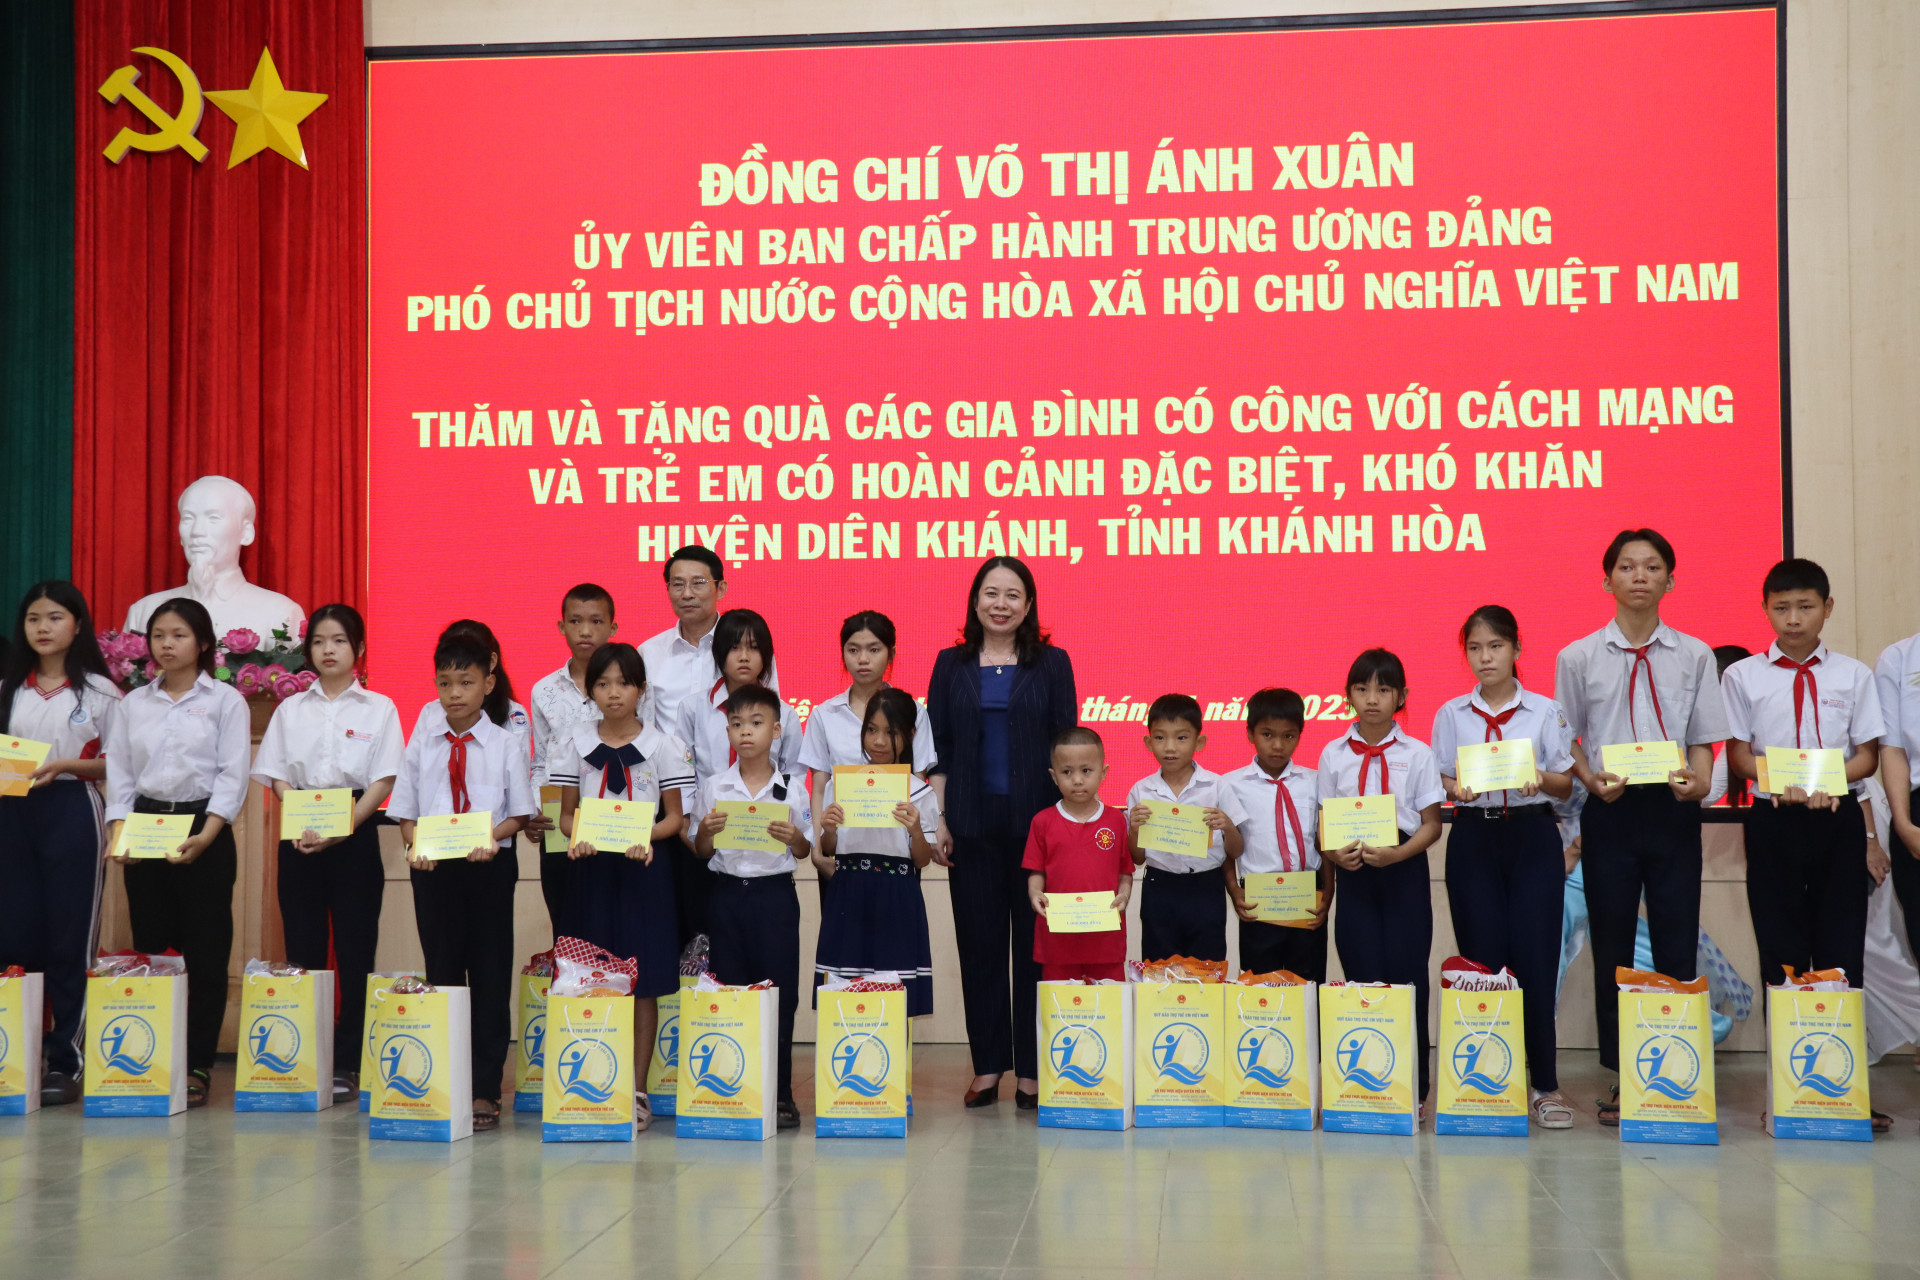 Phó Chủ tịch nước tặng quà cho các trẻ em có hoàn cảnh đặc biệt, kos khăn